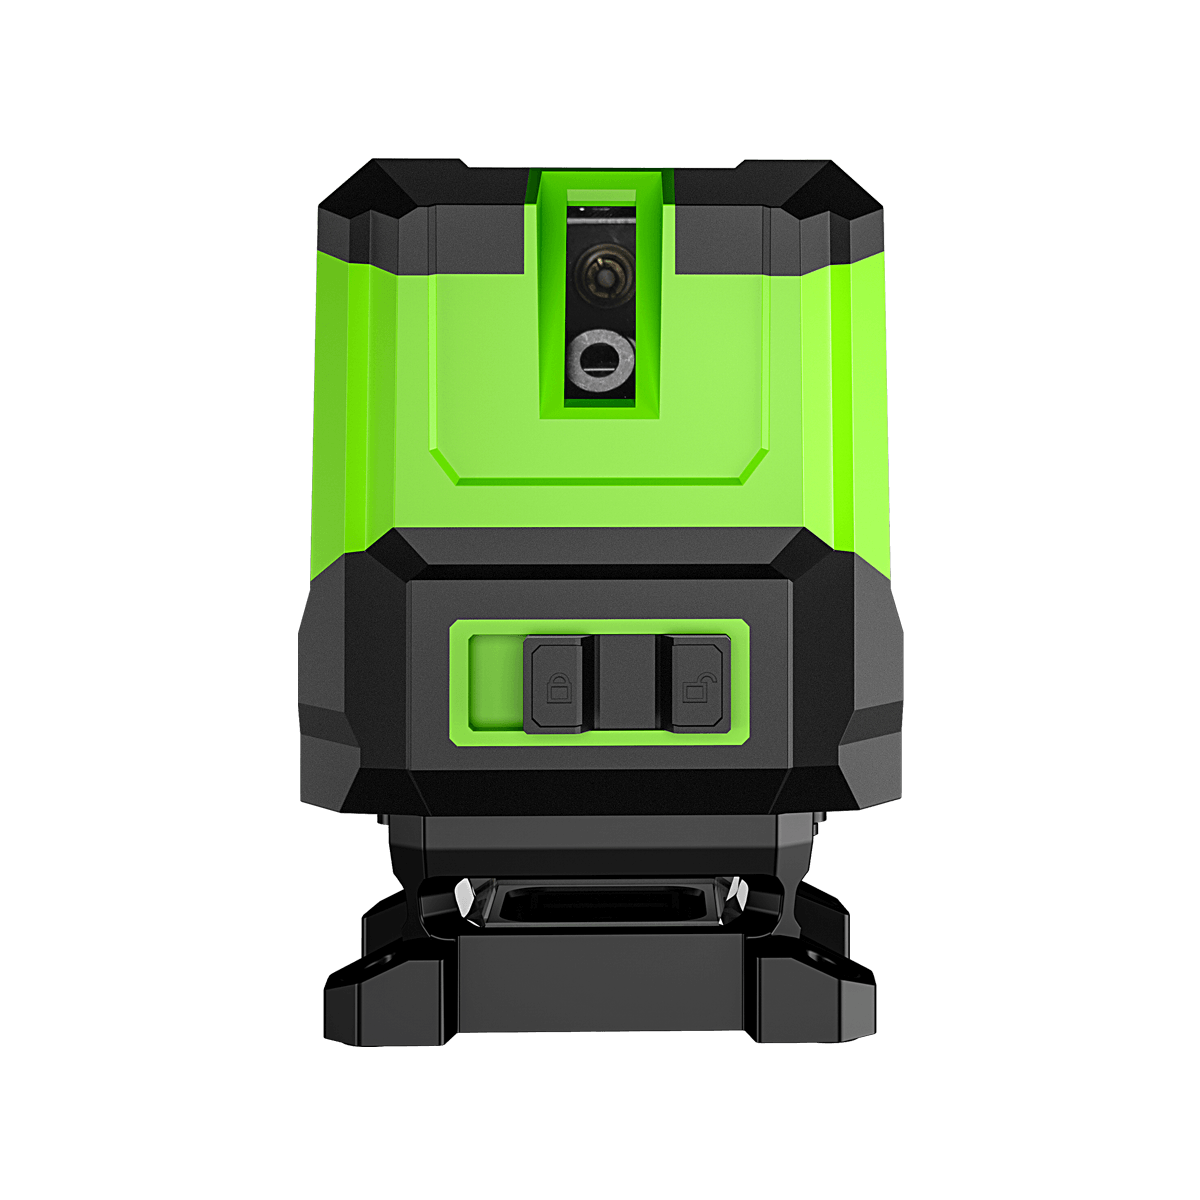  Huepar Nivel láser de línea cruzada, verde 360° horizontal y  dos líneas verticales, herramienta láser multilínea de alineación  autonivelante, batería de iones de litio con puerto de carga tipo C y